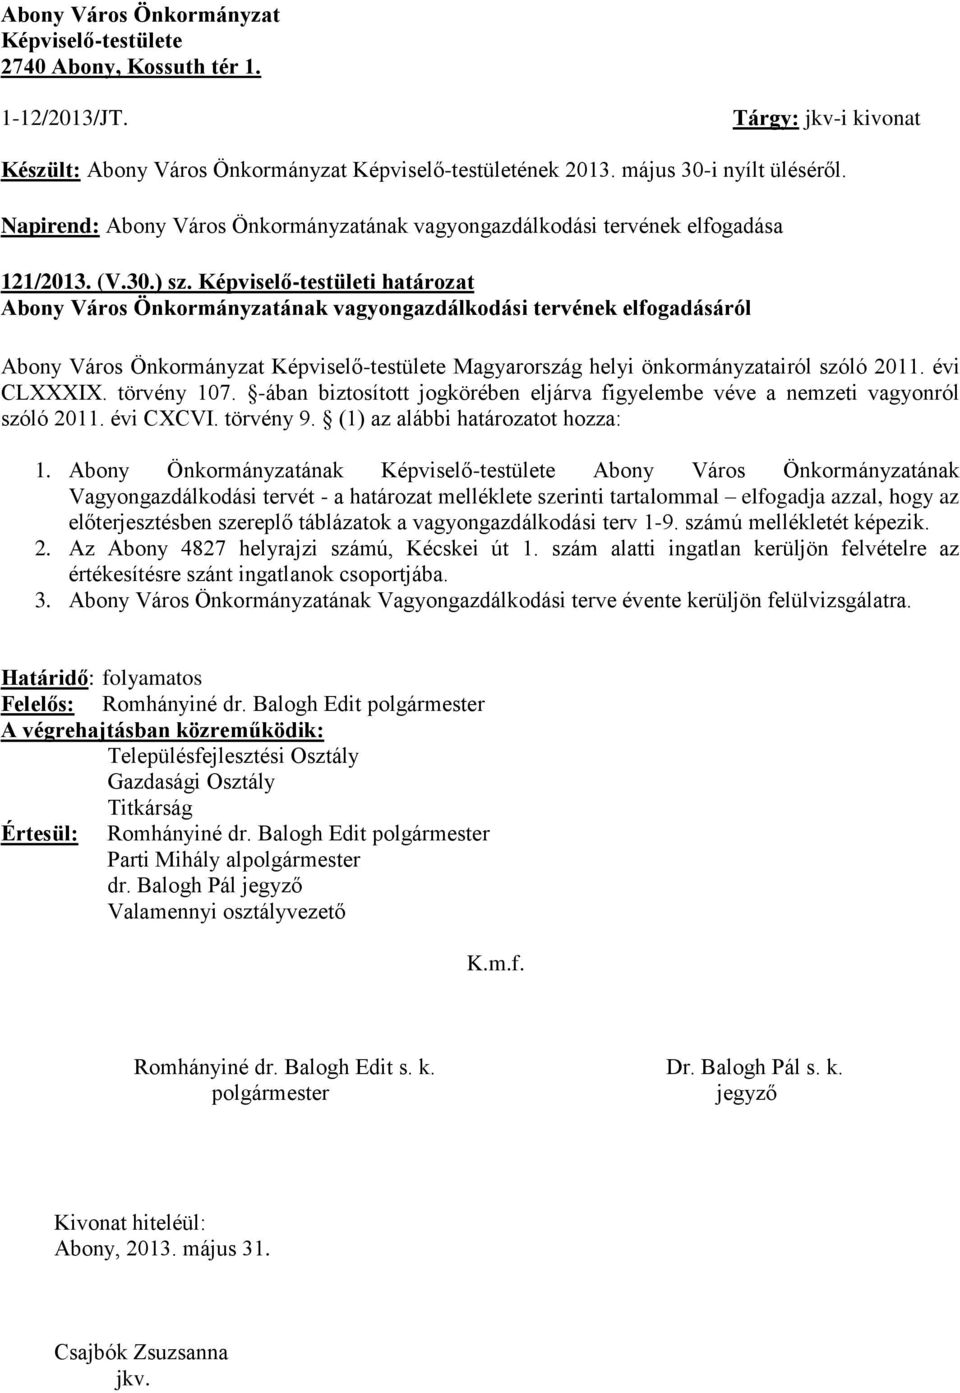 Képviselő-testületi határozat Abony Város Önkormányzatának vagyongazdálkodási tervének elfogadásáról Abony Város Önkormányzat Képviselő-testülete Magyarország helyi önkormányzatairól szóló 20.